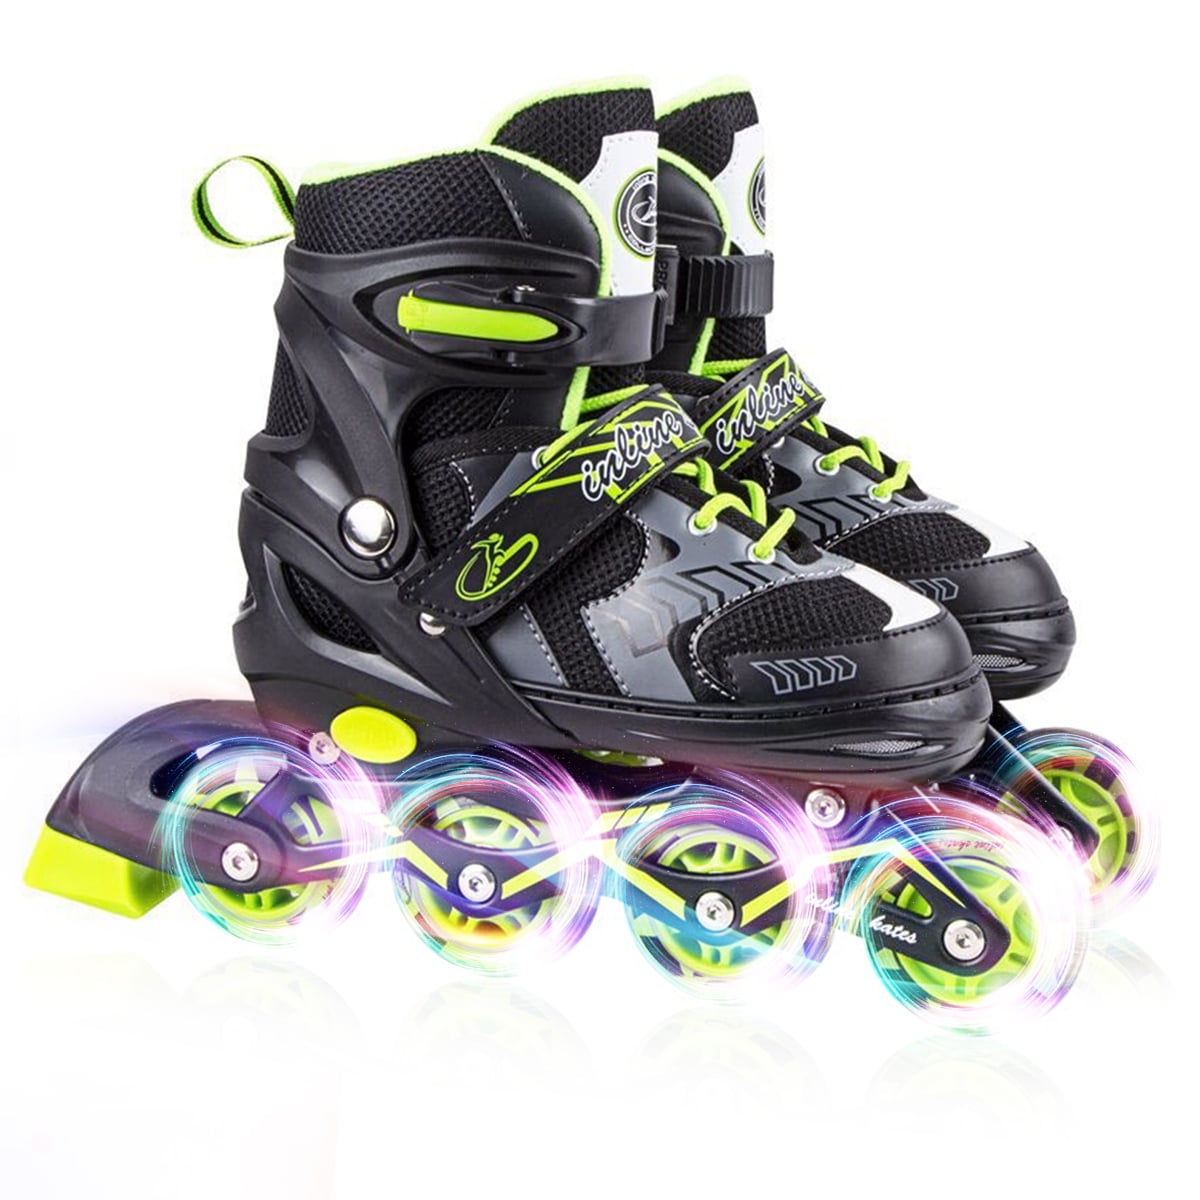 Details about   Adjustable Size Roller Skates for Kids 4 Wheels Children Boys Girls Beginner~ 